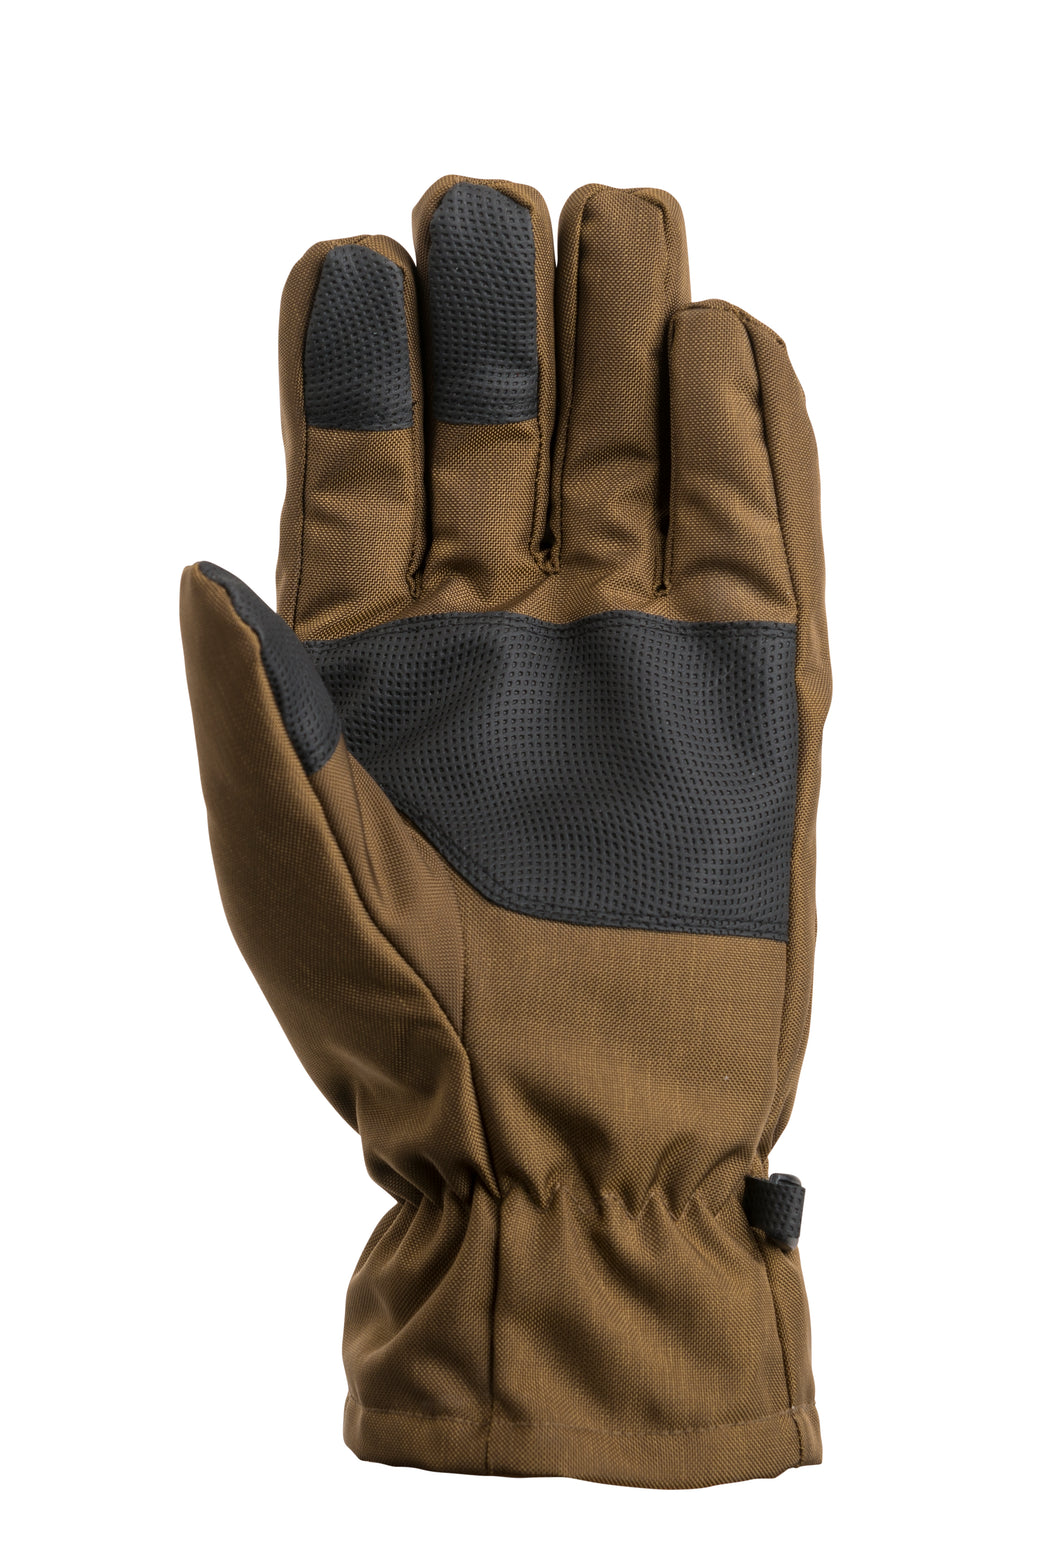 Dan's Non Insulated Briar Glove